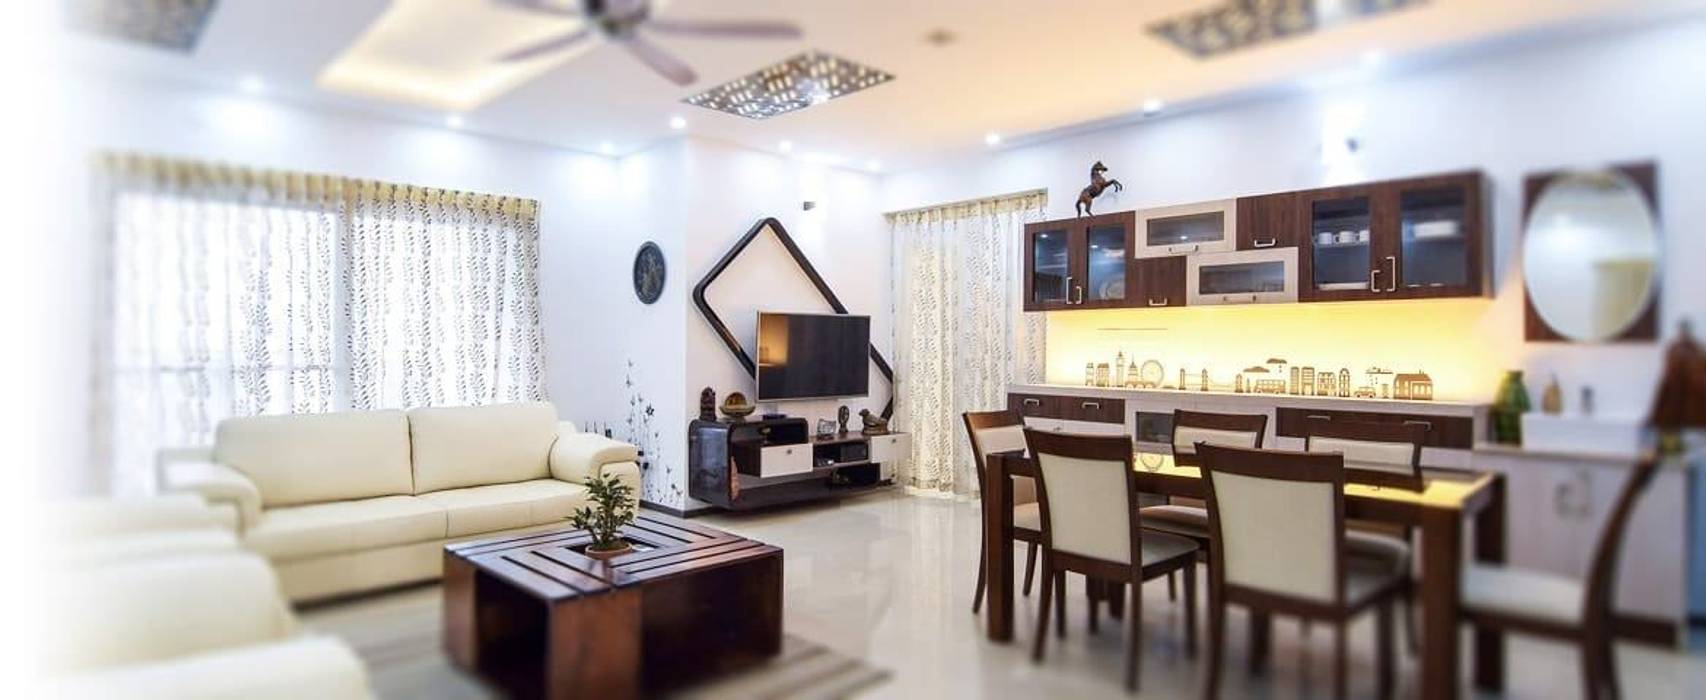 Interior Decorators in Delhi, Authentic Decorators Authentic Decorators Living room Accessories & decoration